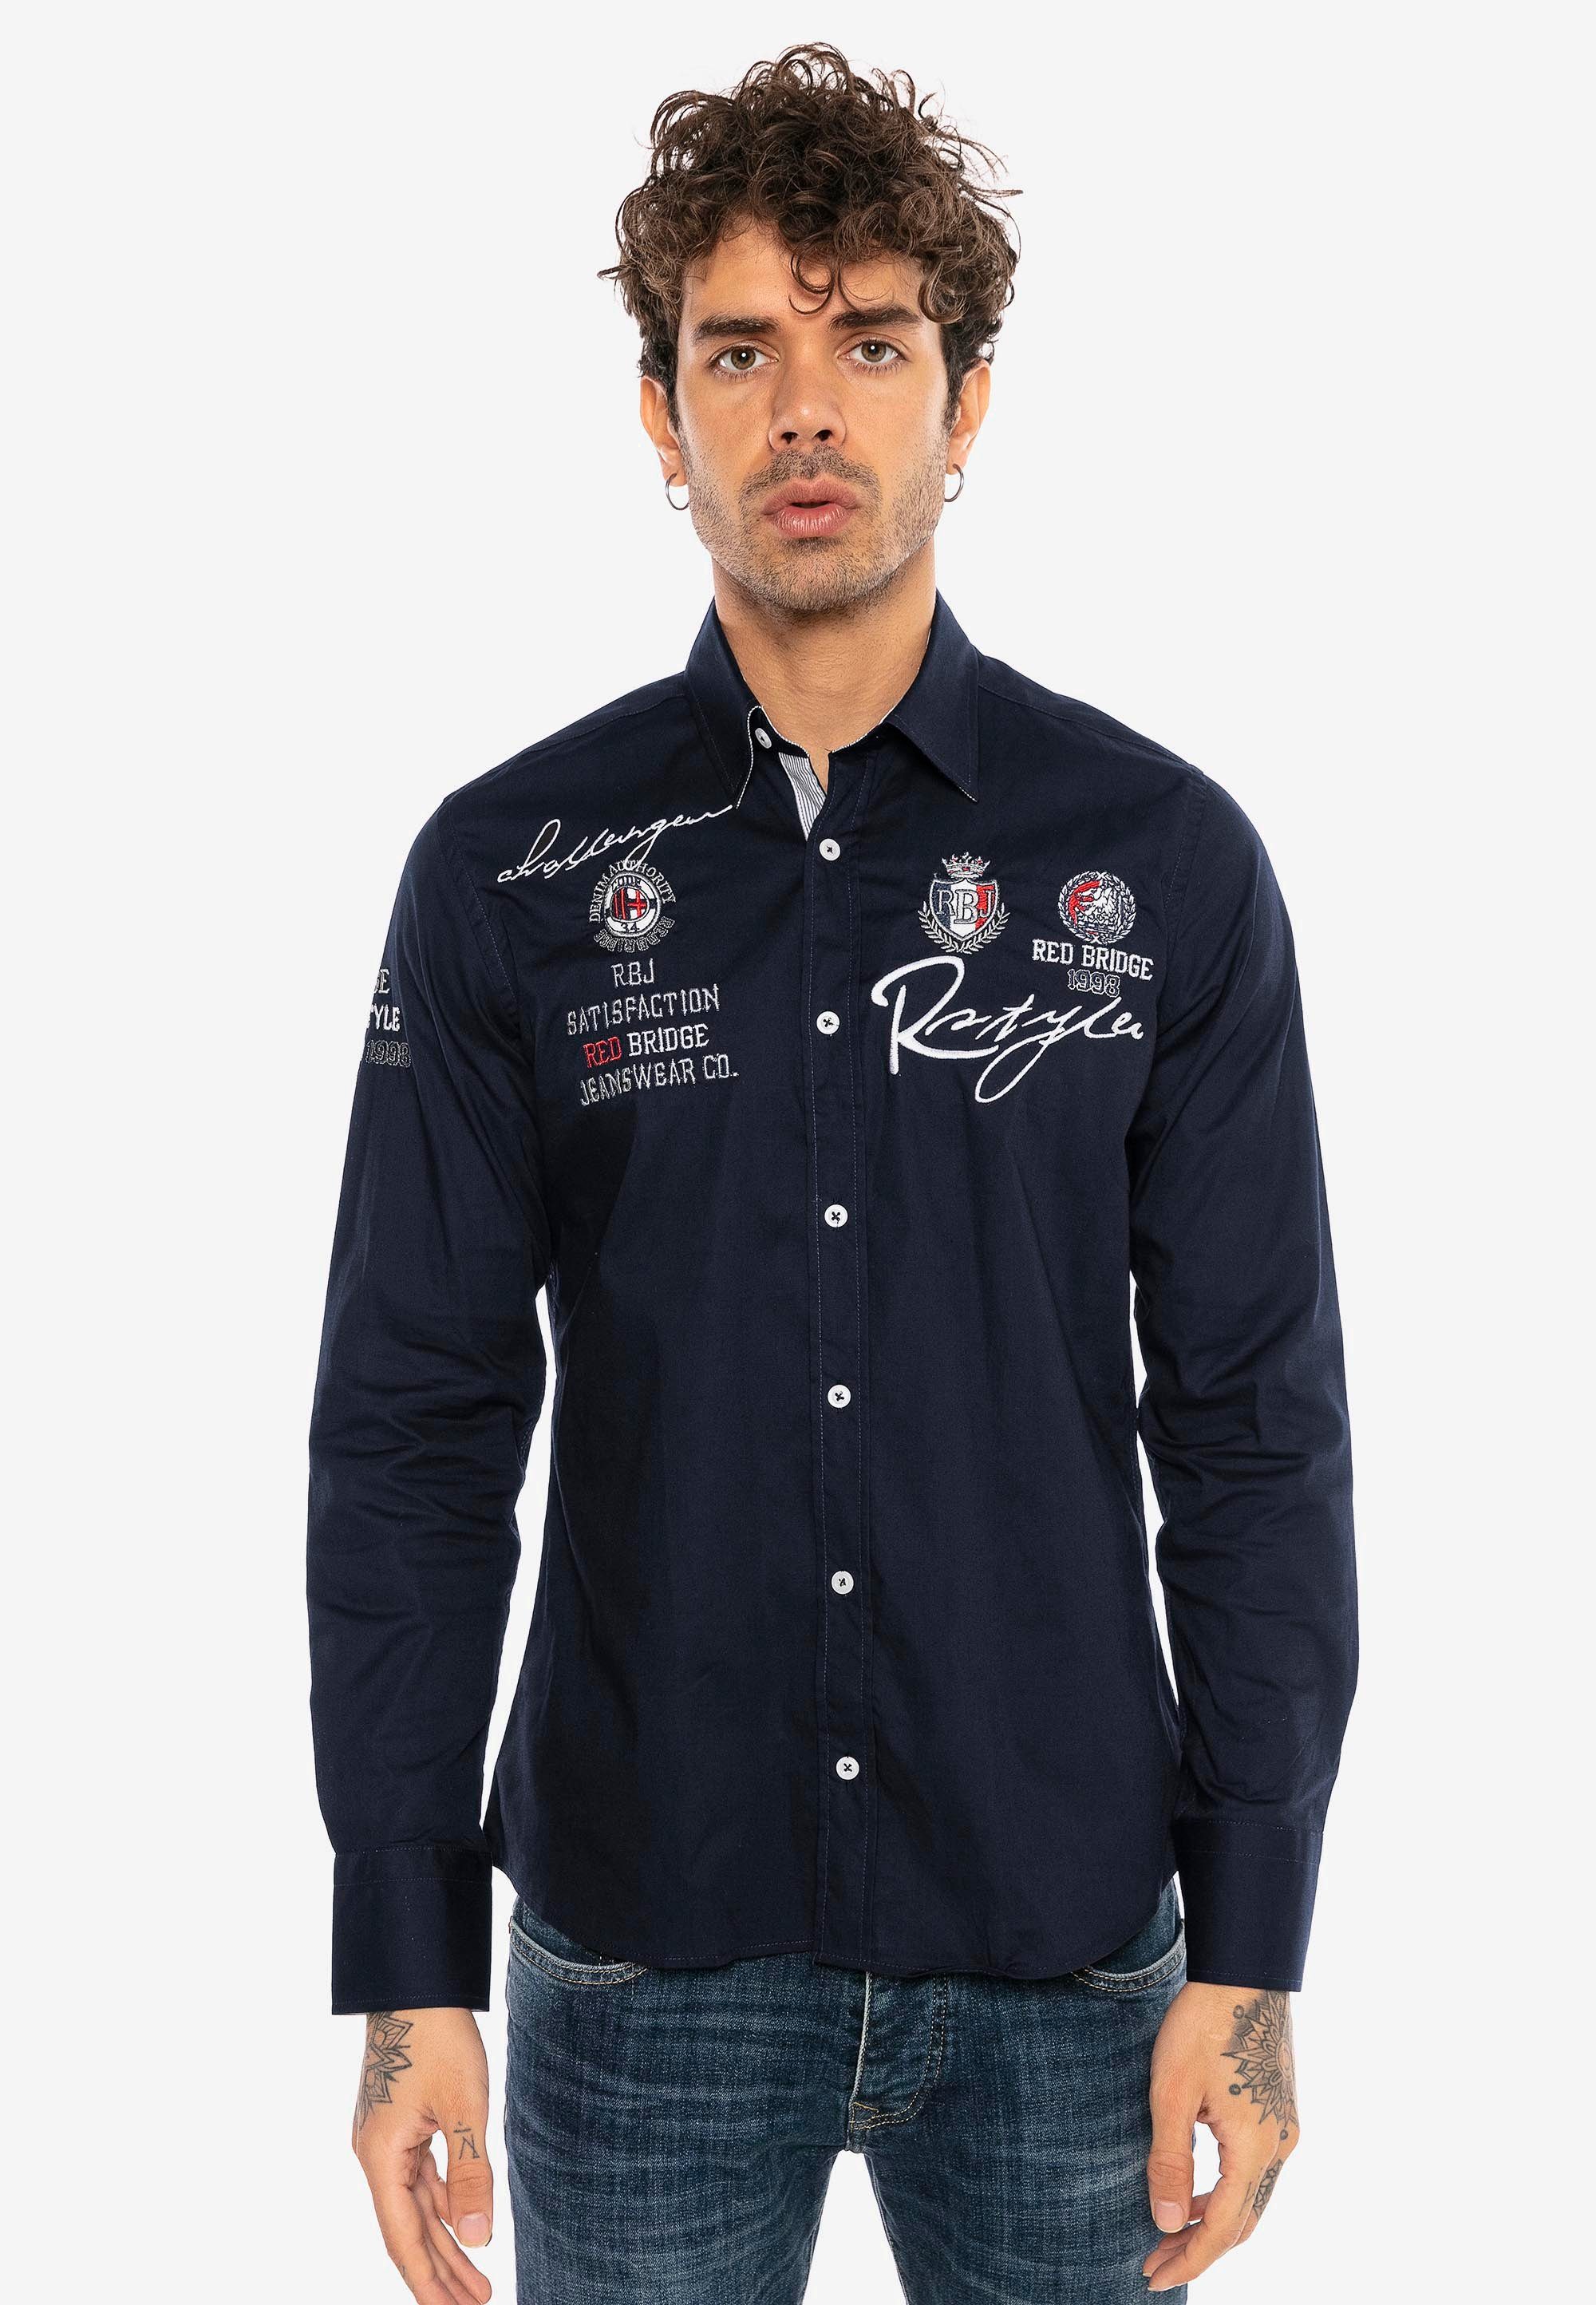 RedBridge Langarmhemd Jersey City im Slim Fit-Schnitt mit Stickerei dunkelblau | Klassische Hemden